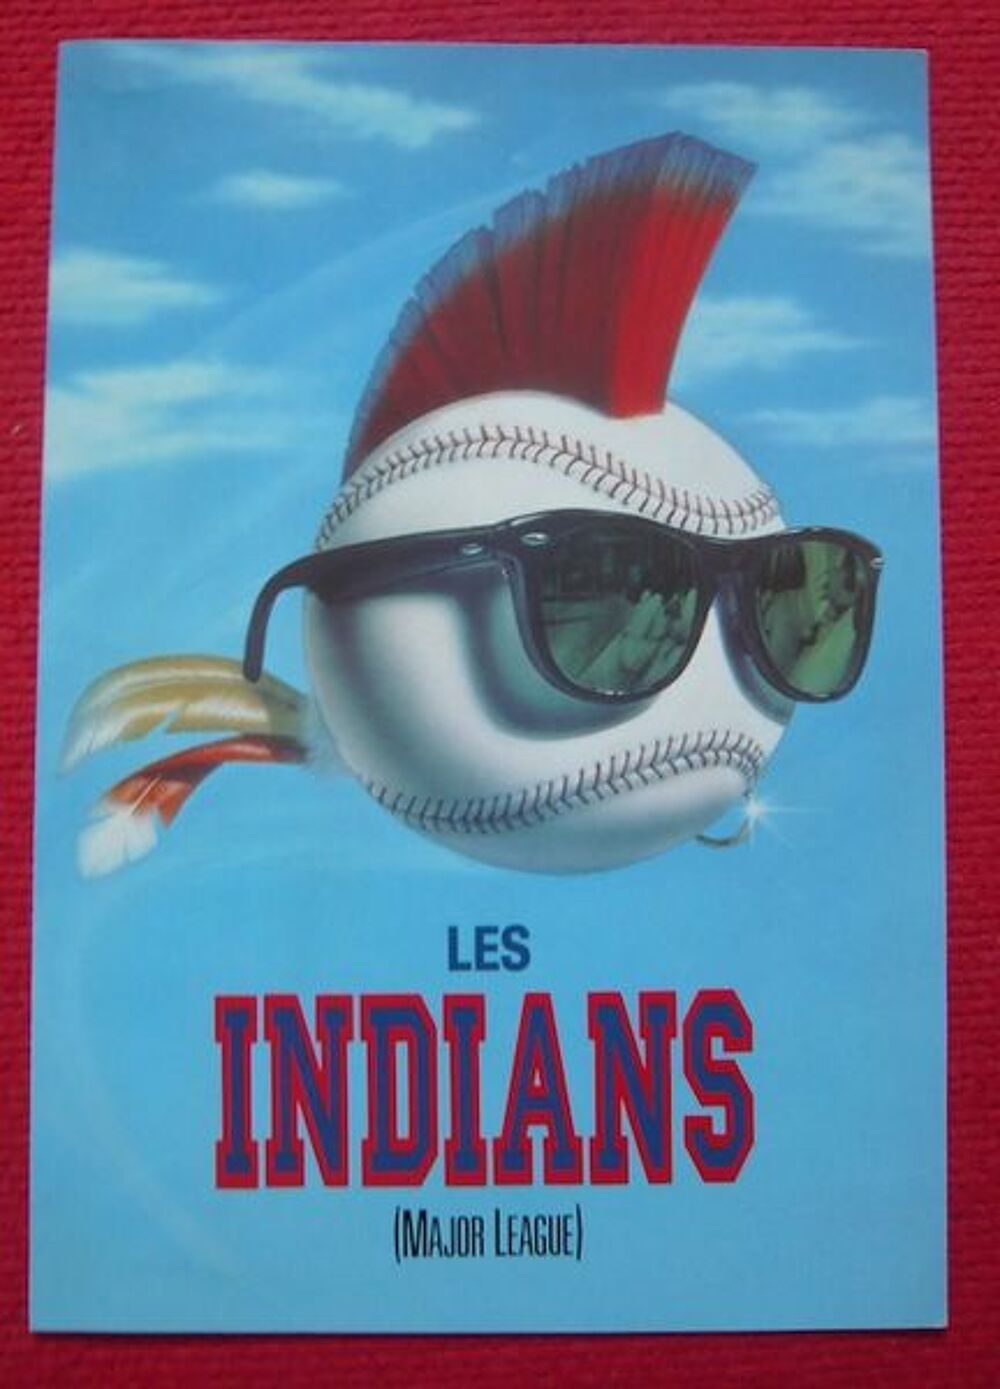 Affichette du film Les Indians (1989) ? David Ward 